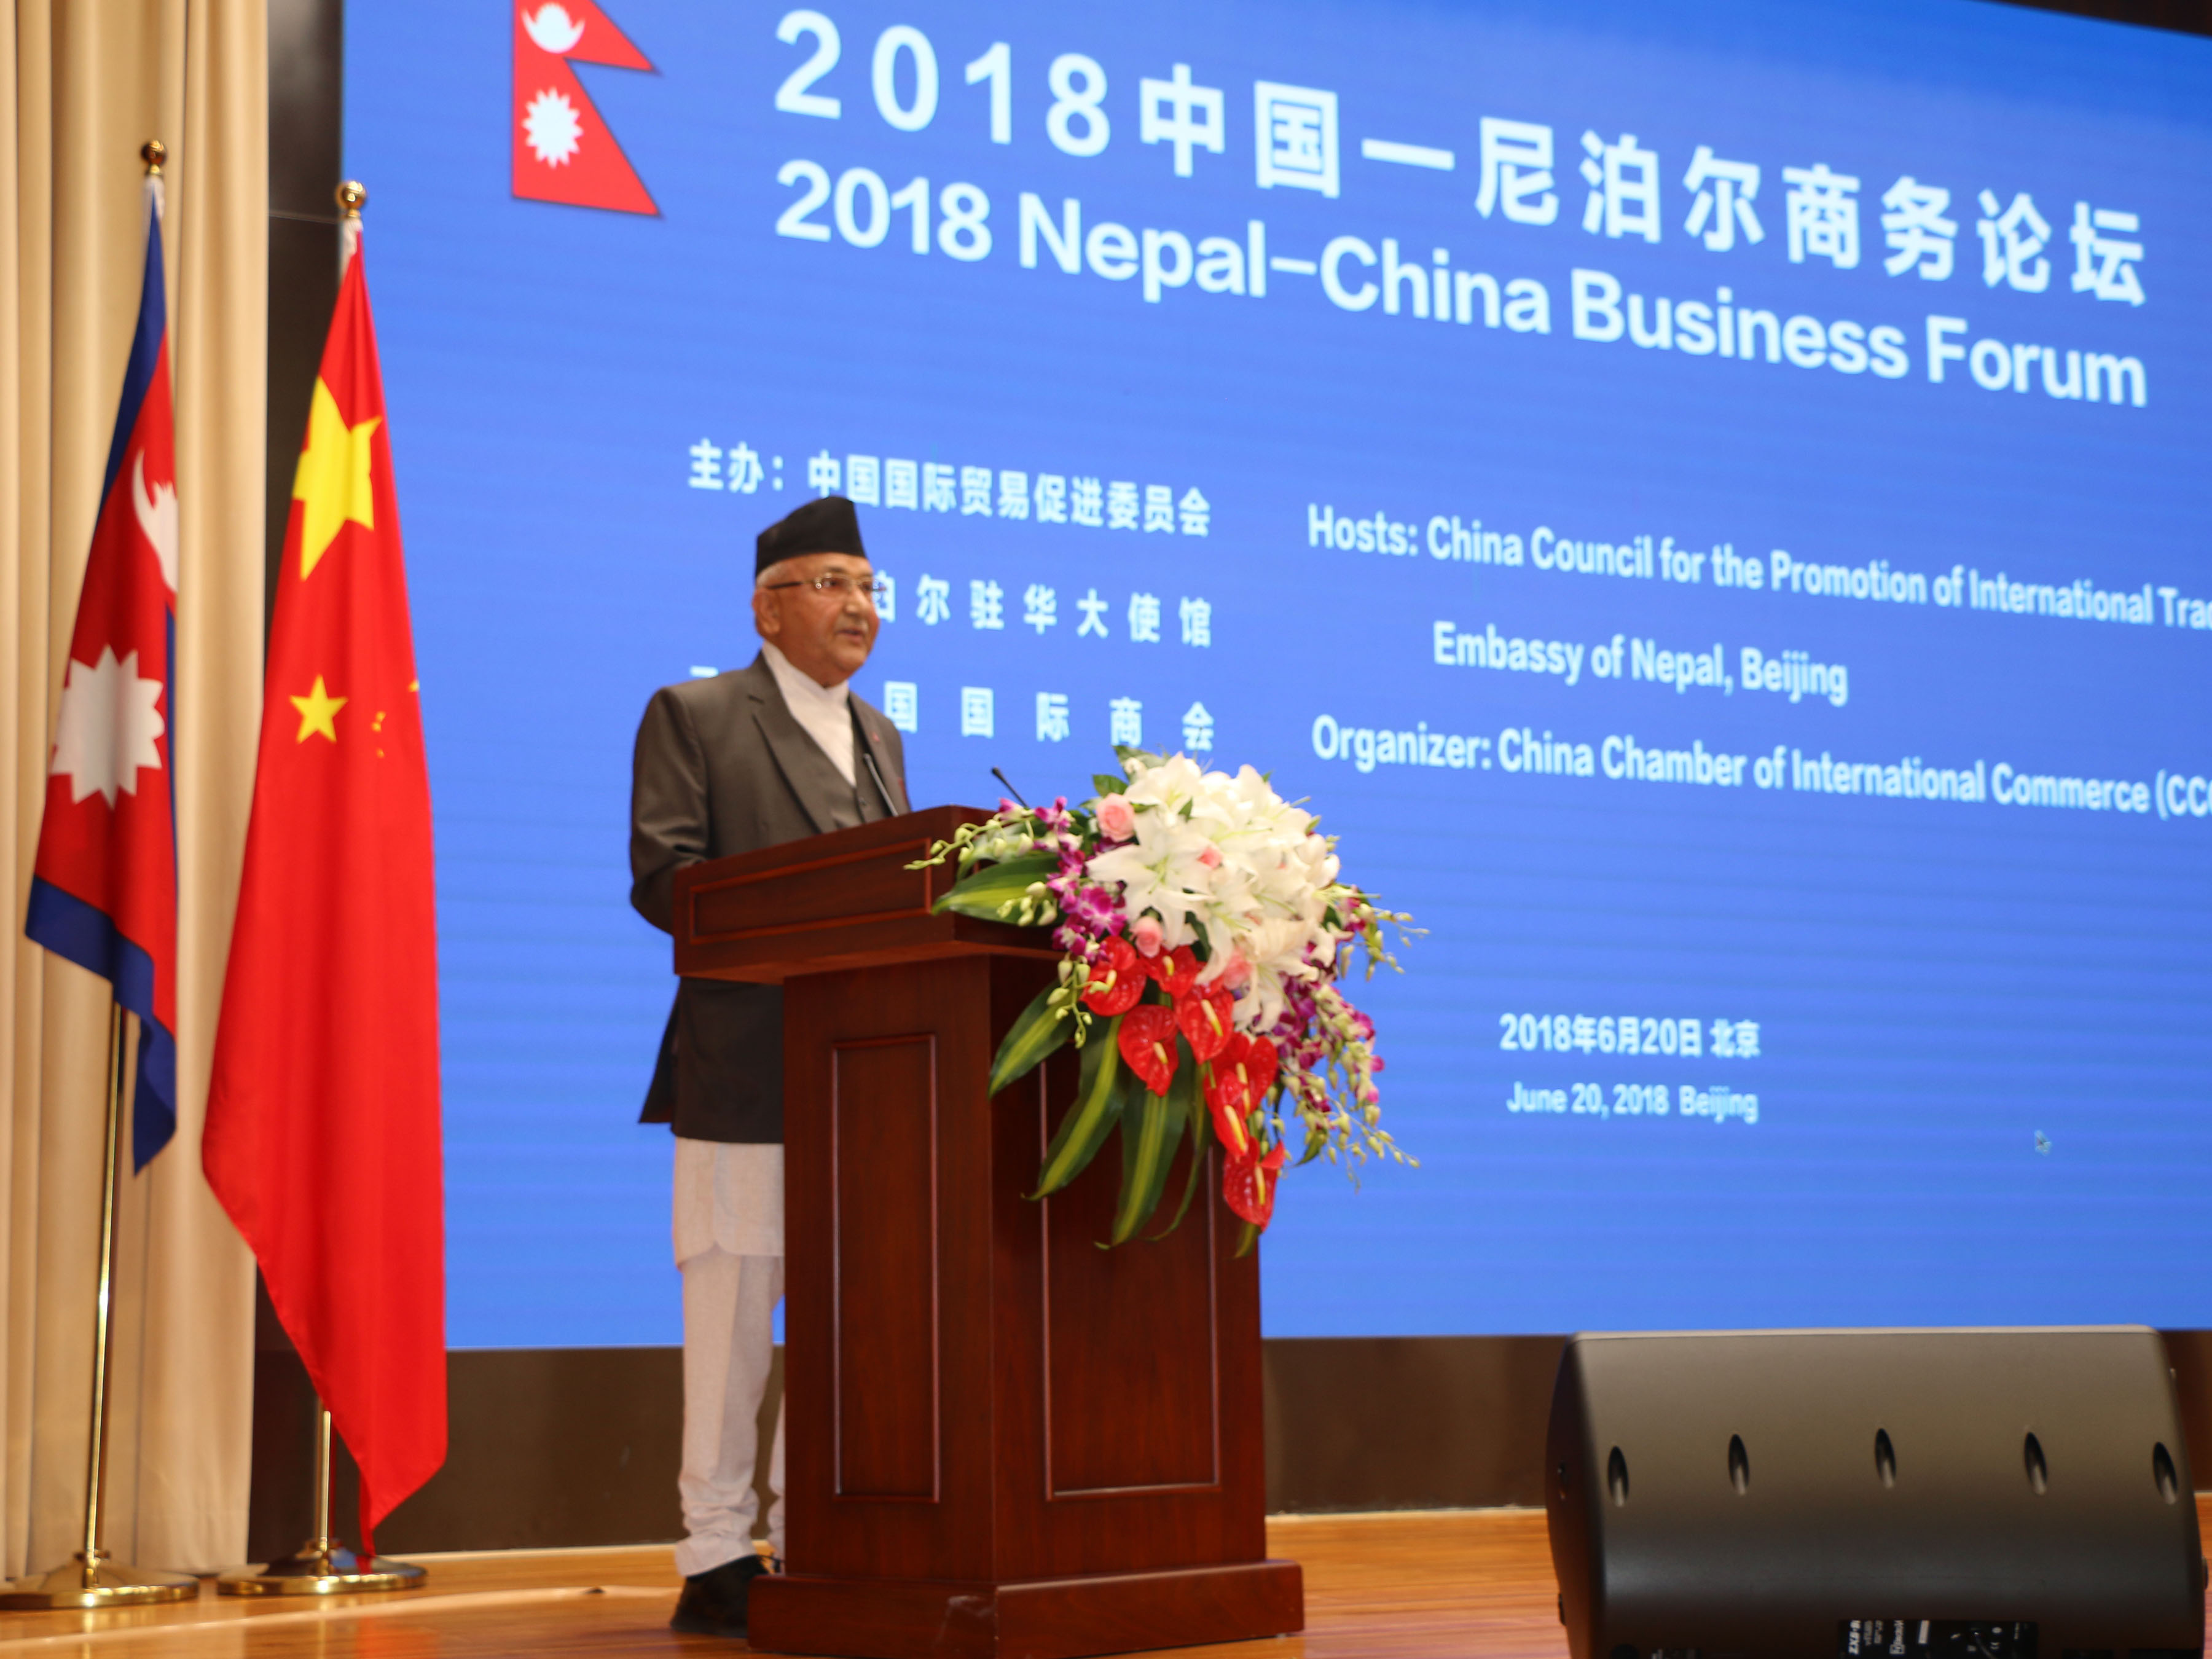 चिनियाँ लगानीकर्तालार्इ प्रधानमन्त्रीको सम्बोधन : नेपाल र चीन असल छिमेकी मात्र होइनन् विकास साझेदार पनि हुन् 